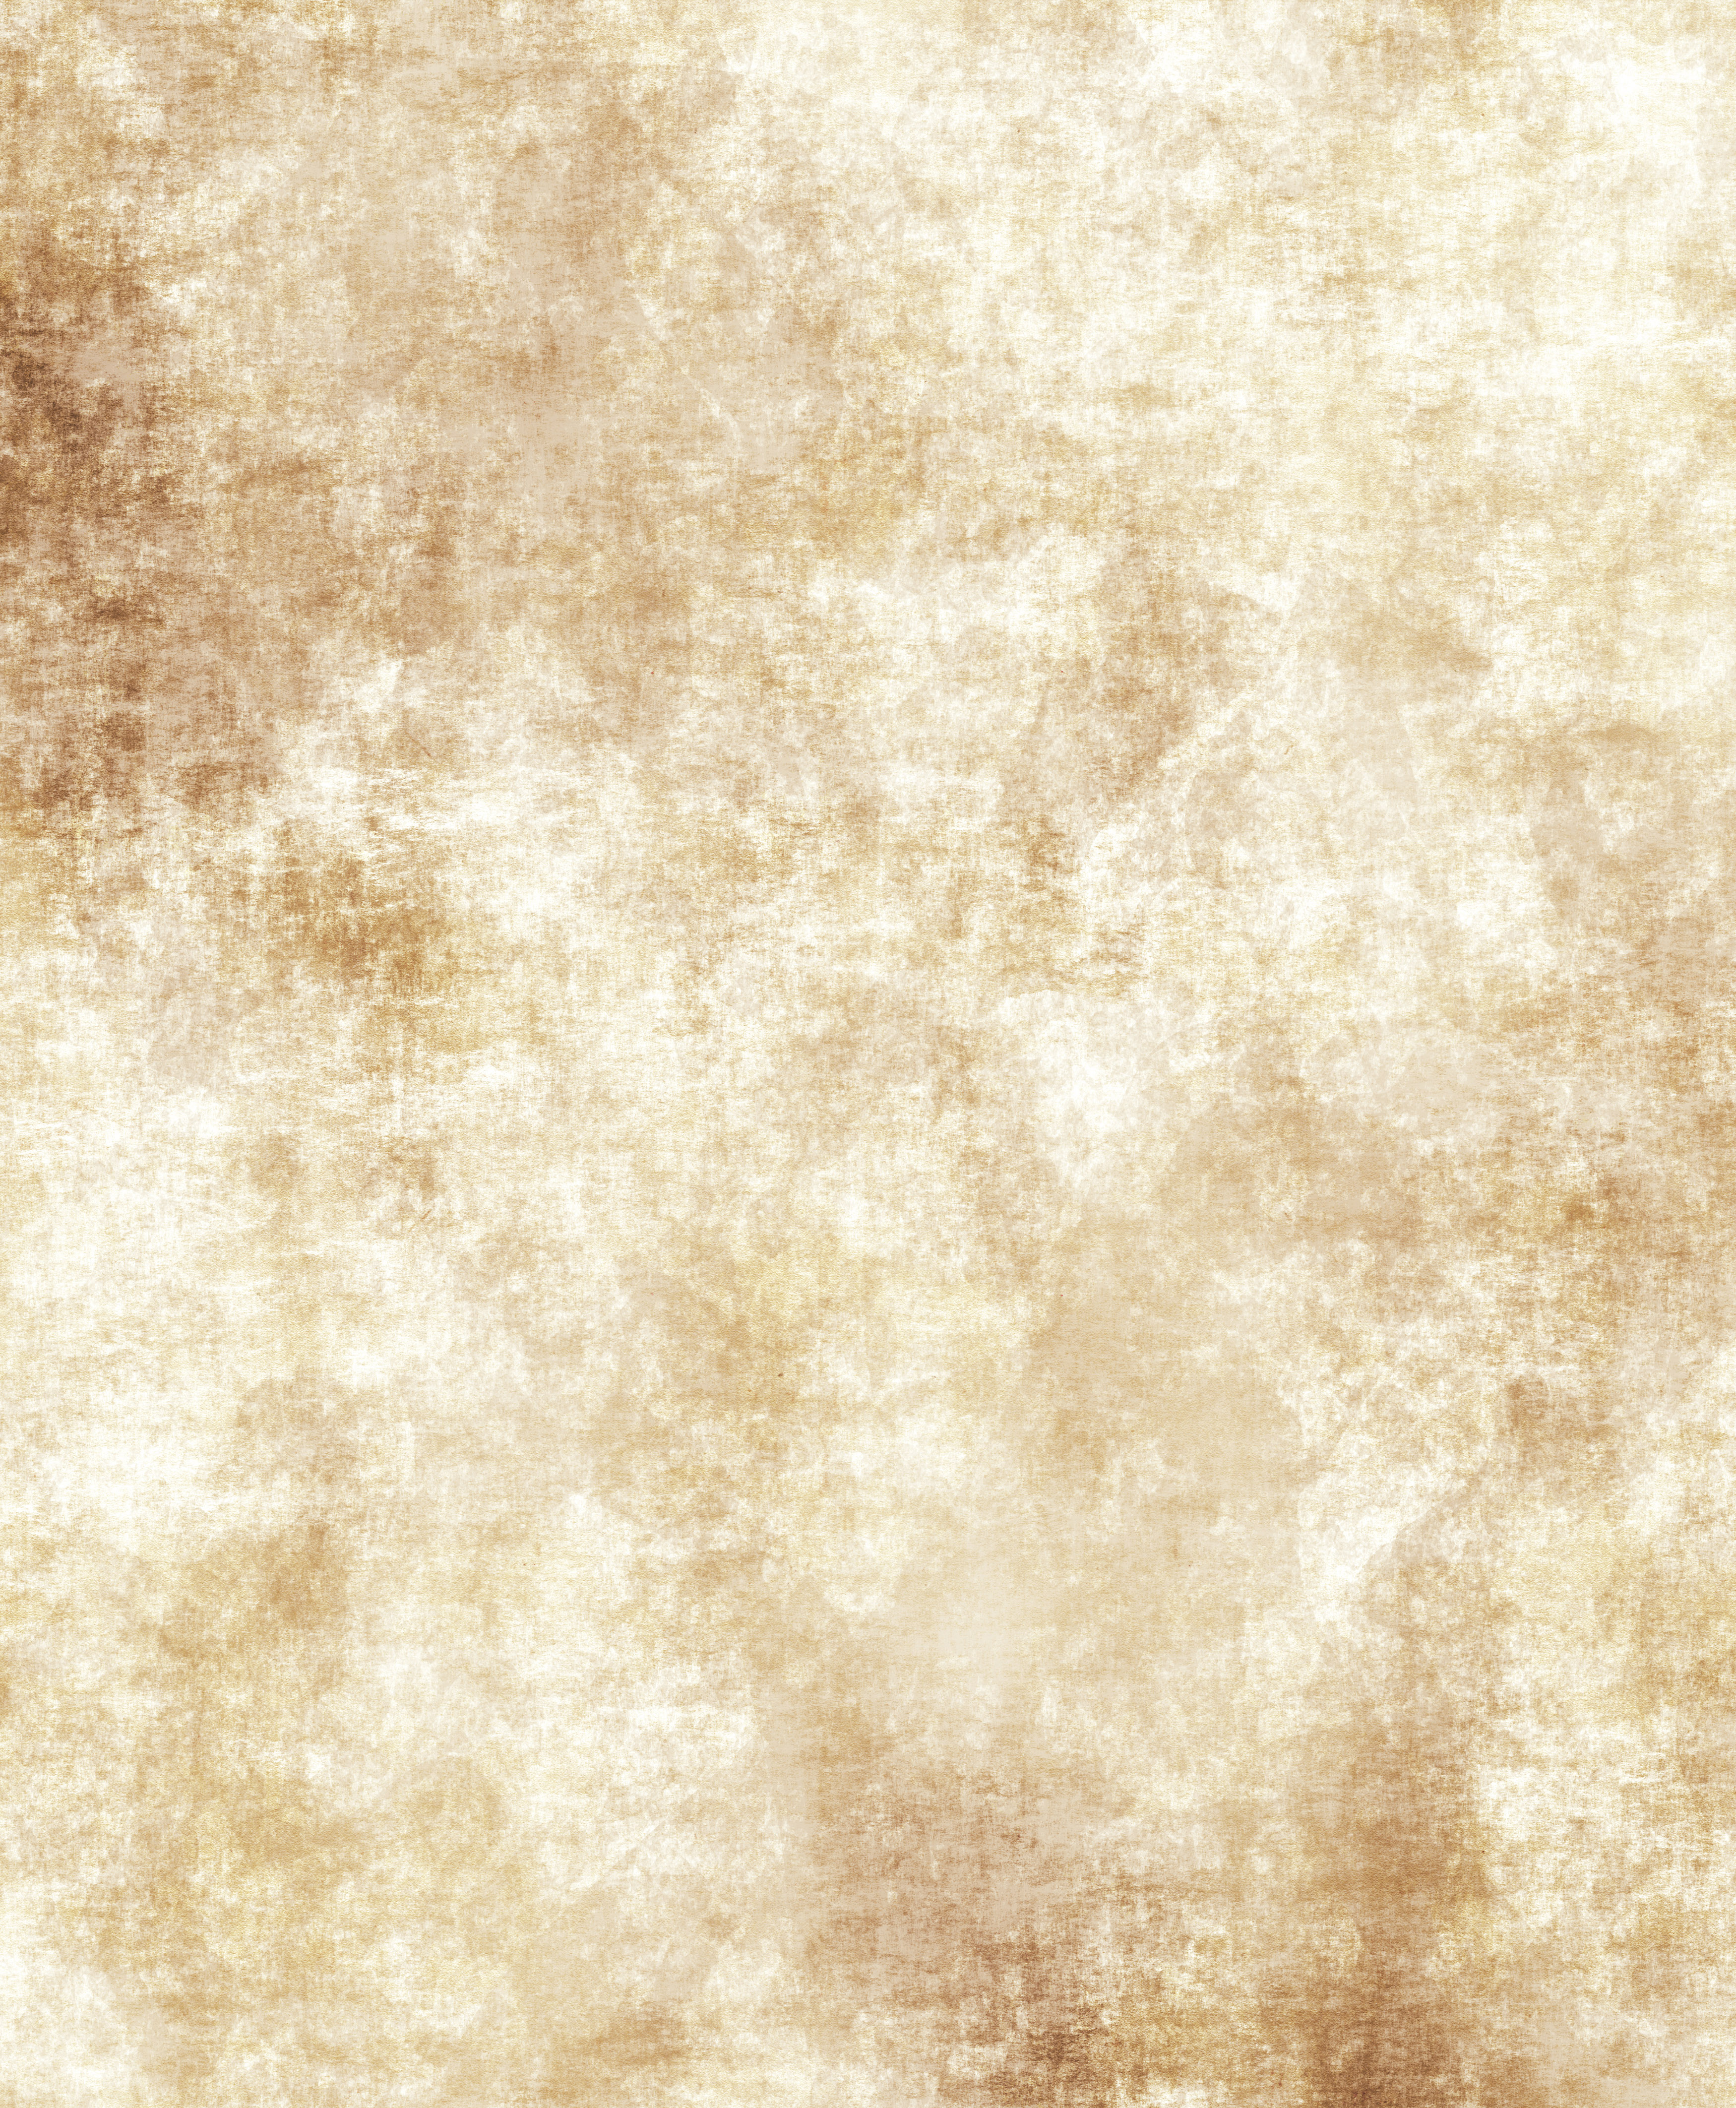 羊皮紙の壁紙,褐色,ベージュ,パターン,壁紙